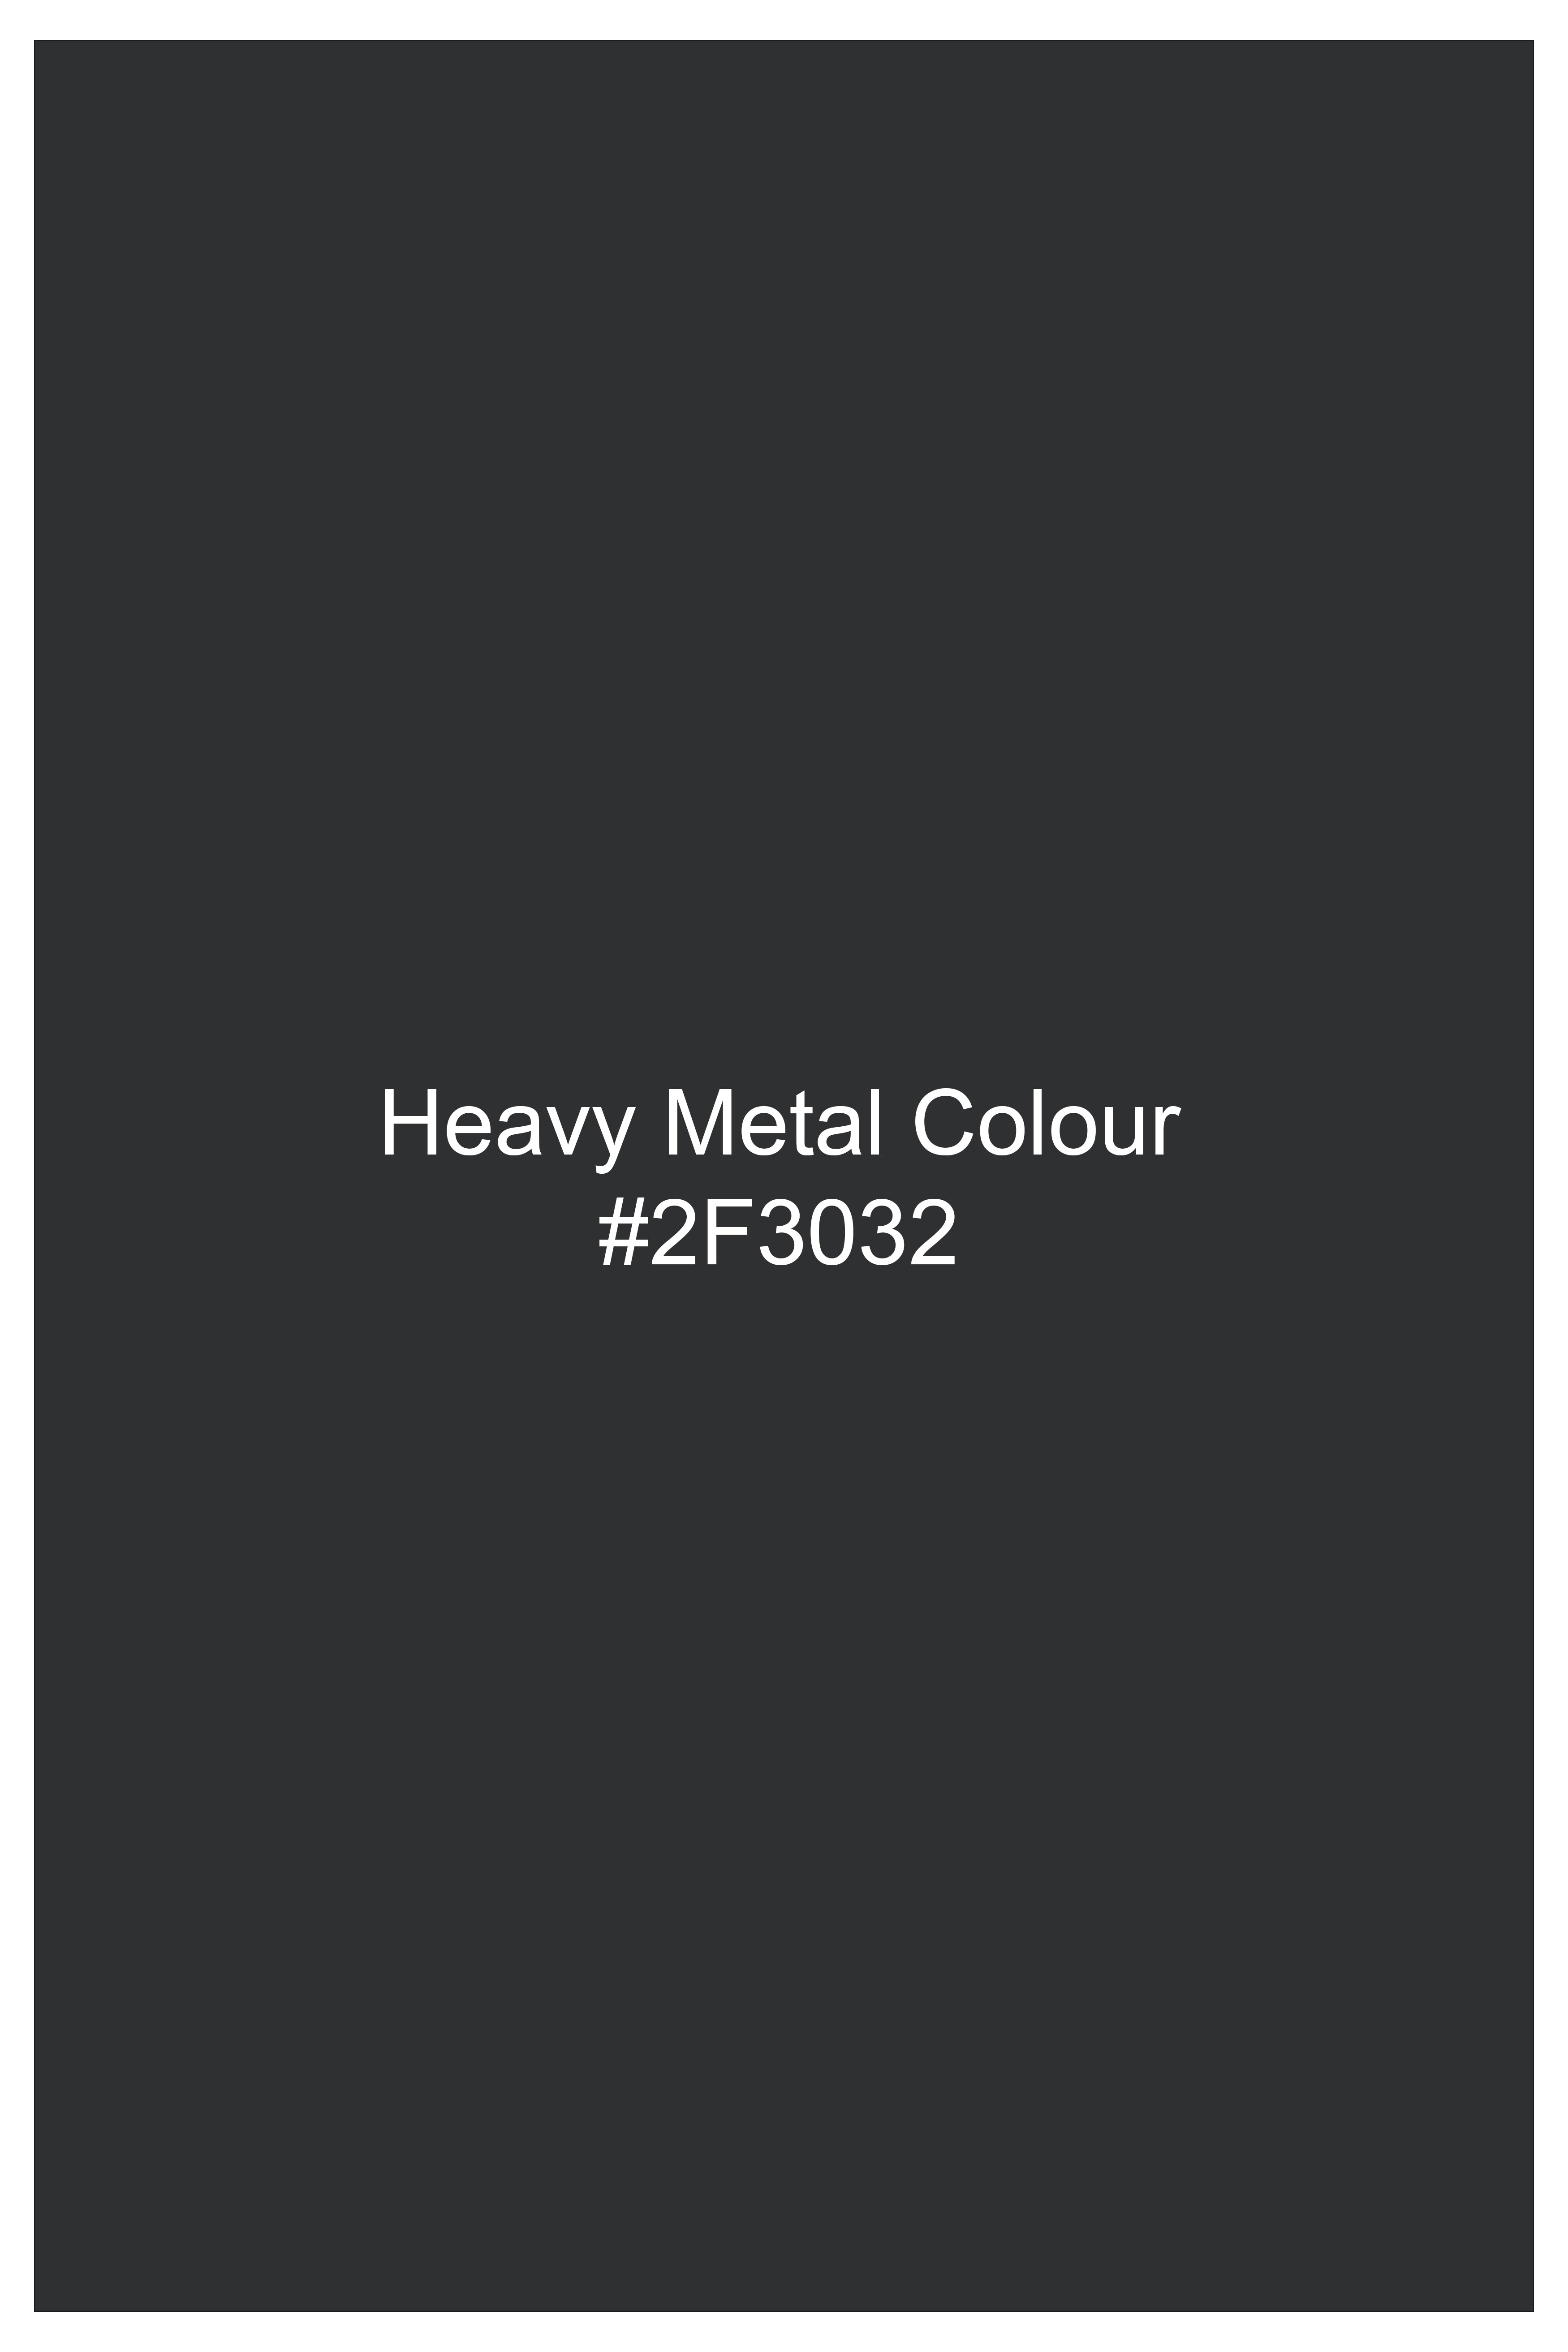 Heavy Metal Gray Plaid Tweed Suit